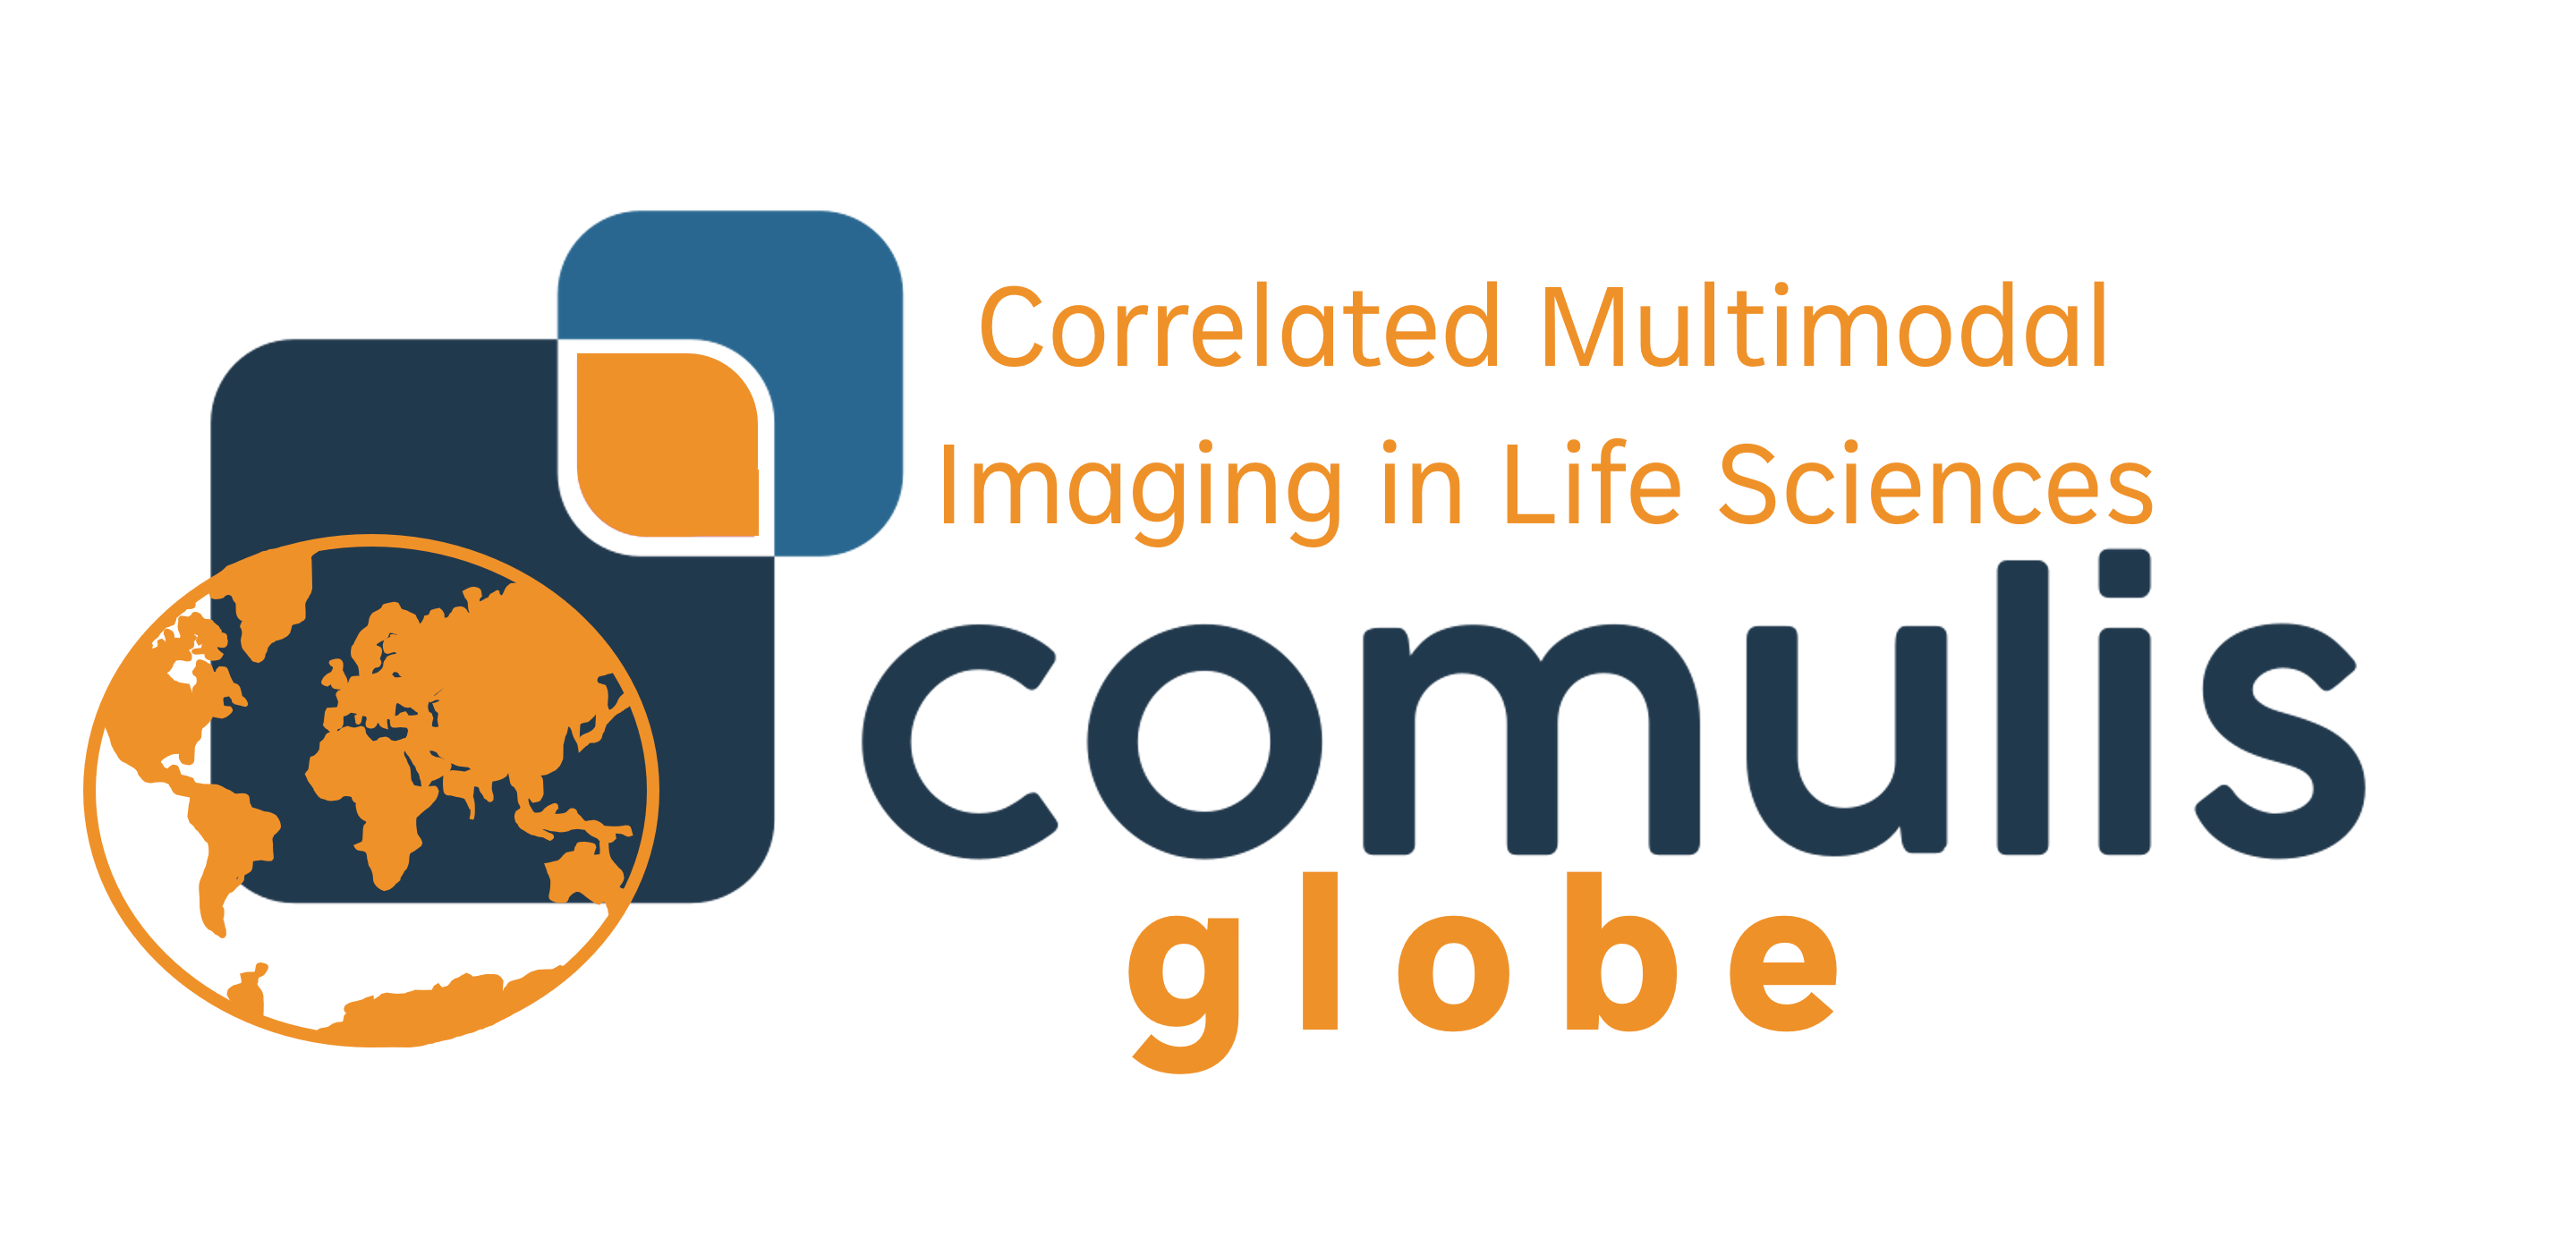 COMULIS globe logo